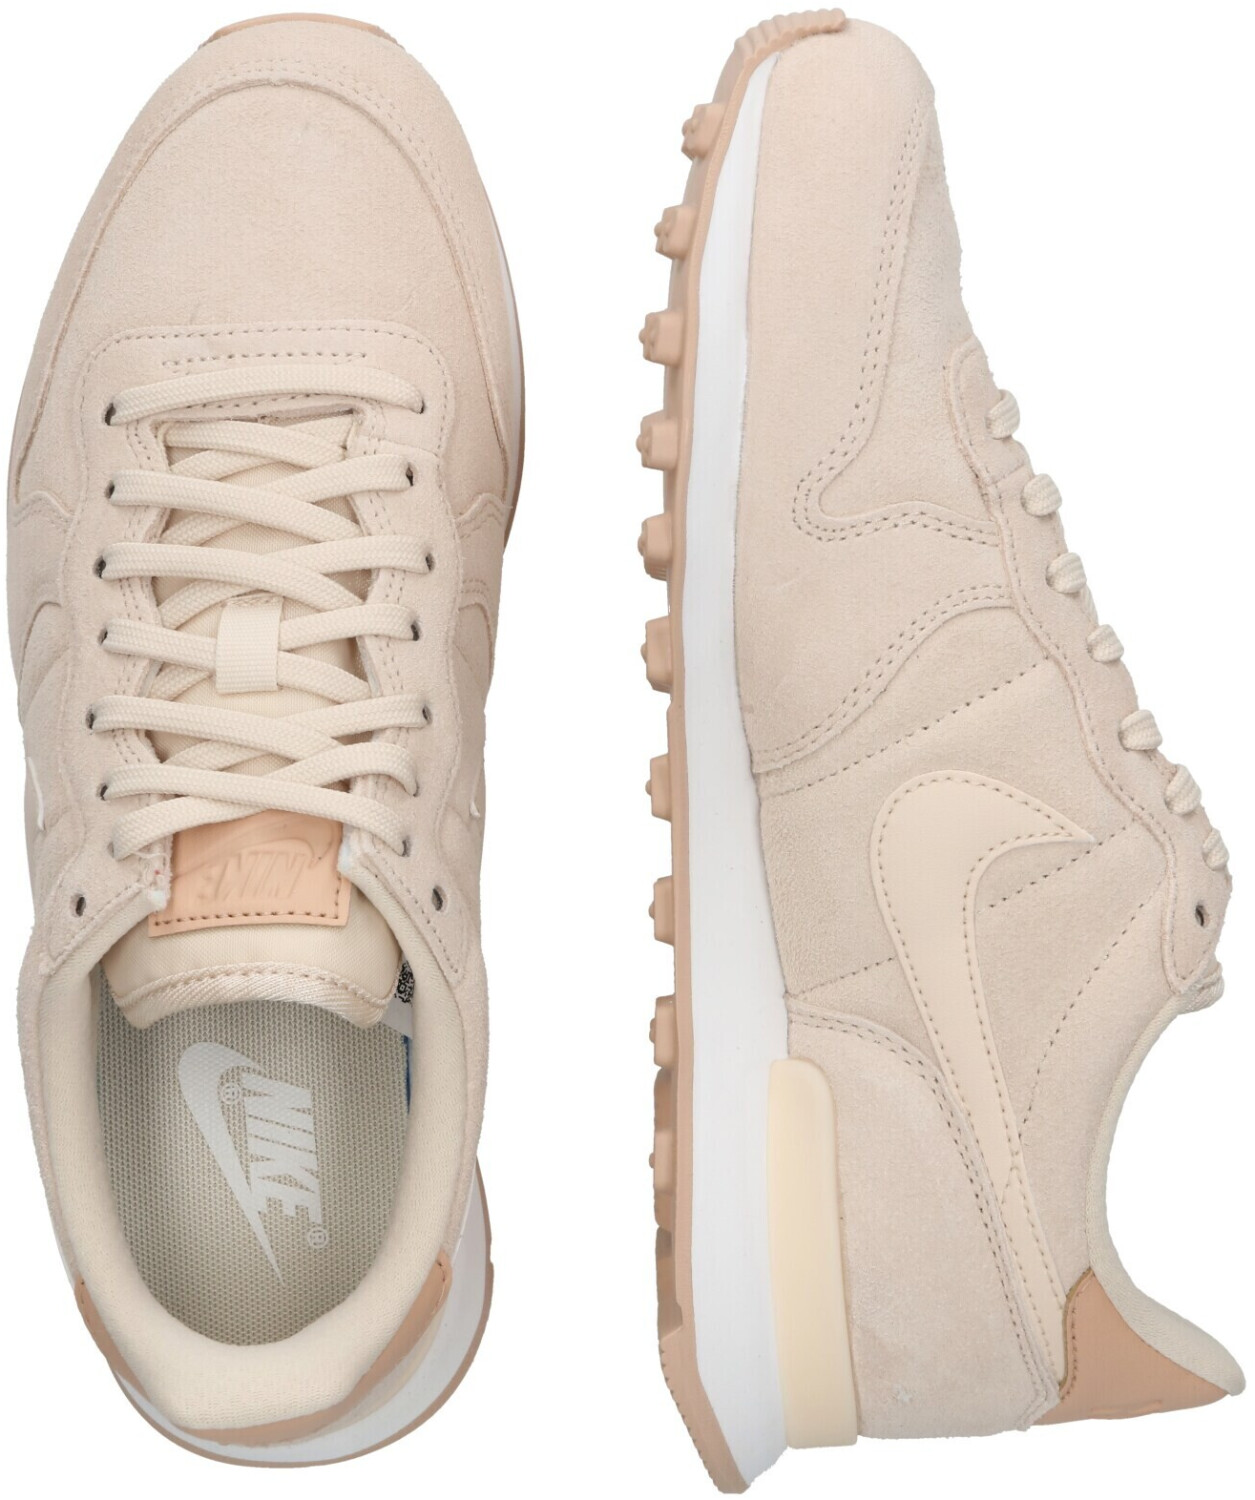 Nike Internationalist Women pearl white/bio beige/summit white ab 77,99 € (September | Preisvergleich bei idealo.de